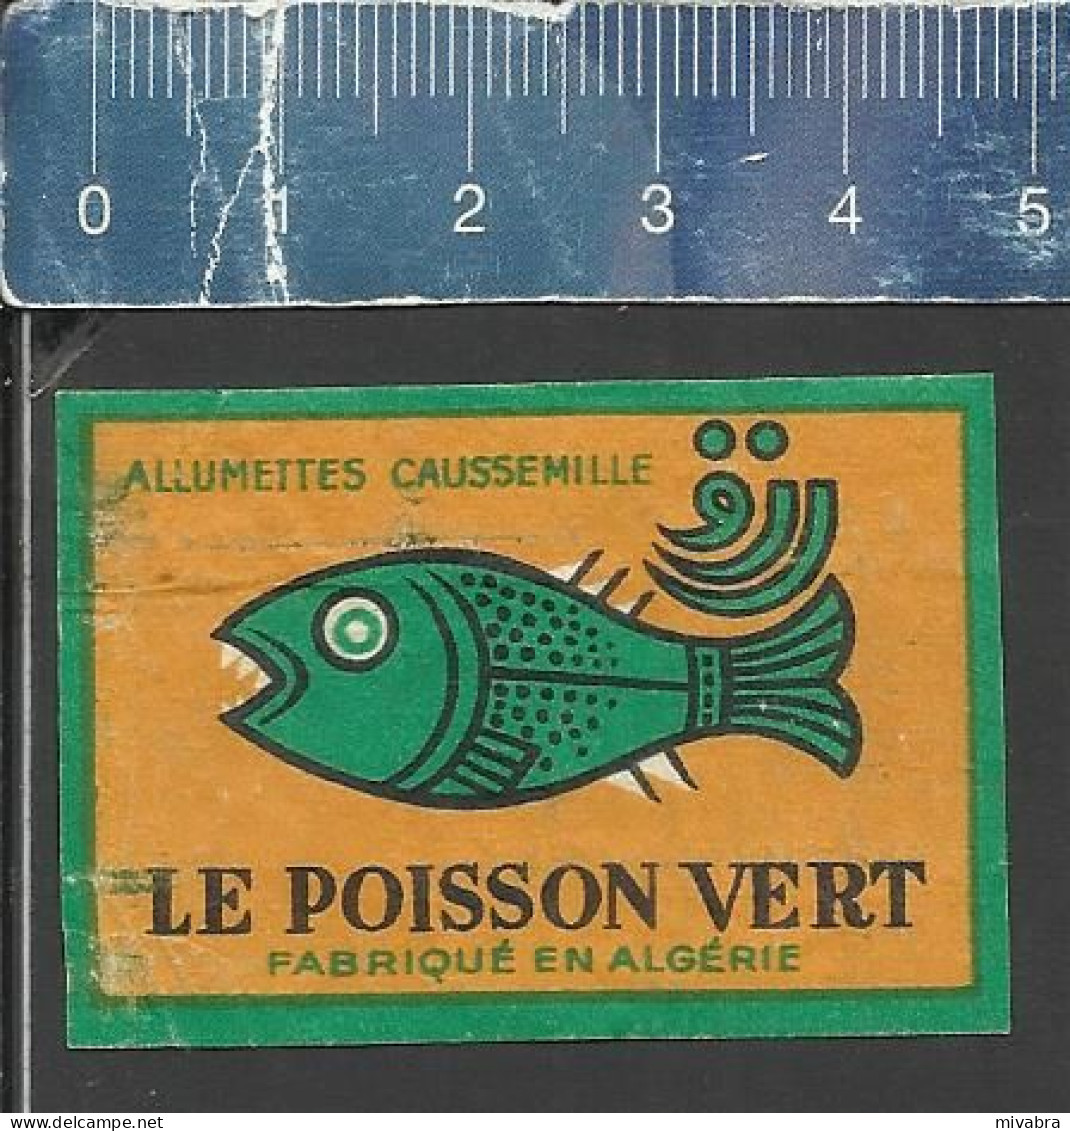 LE POISSON VERT - OLD MATCHBOX LABEL ALGERIA - AMMUMETTES CAUSSEMILLE - Matchbox Labels